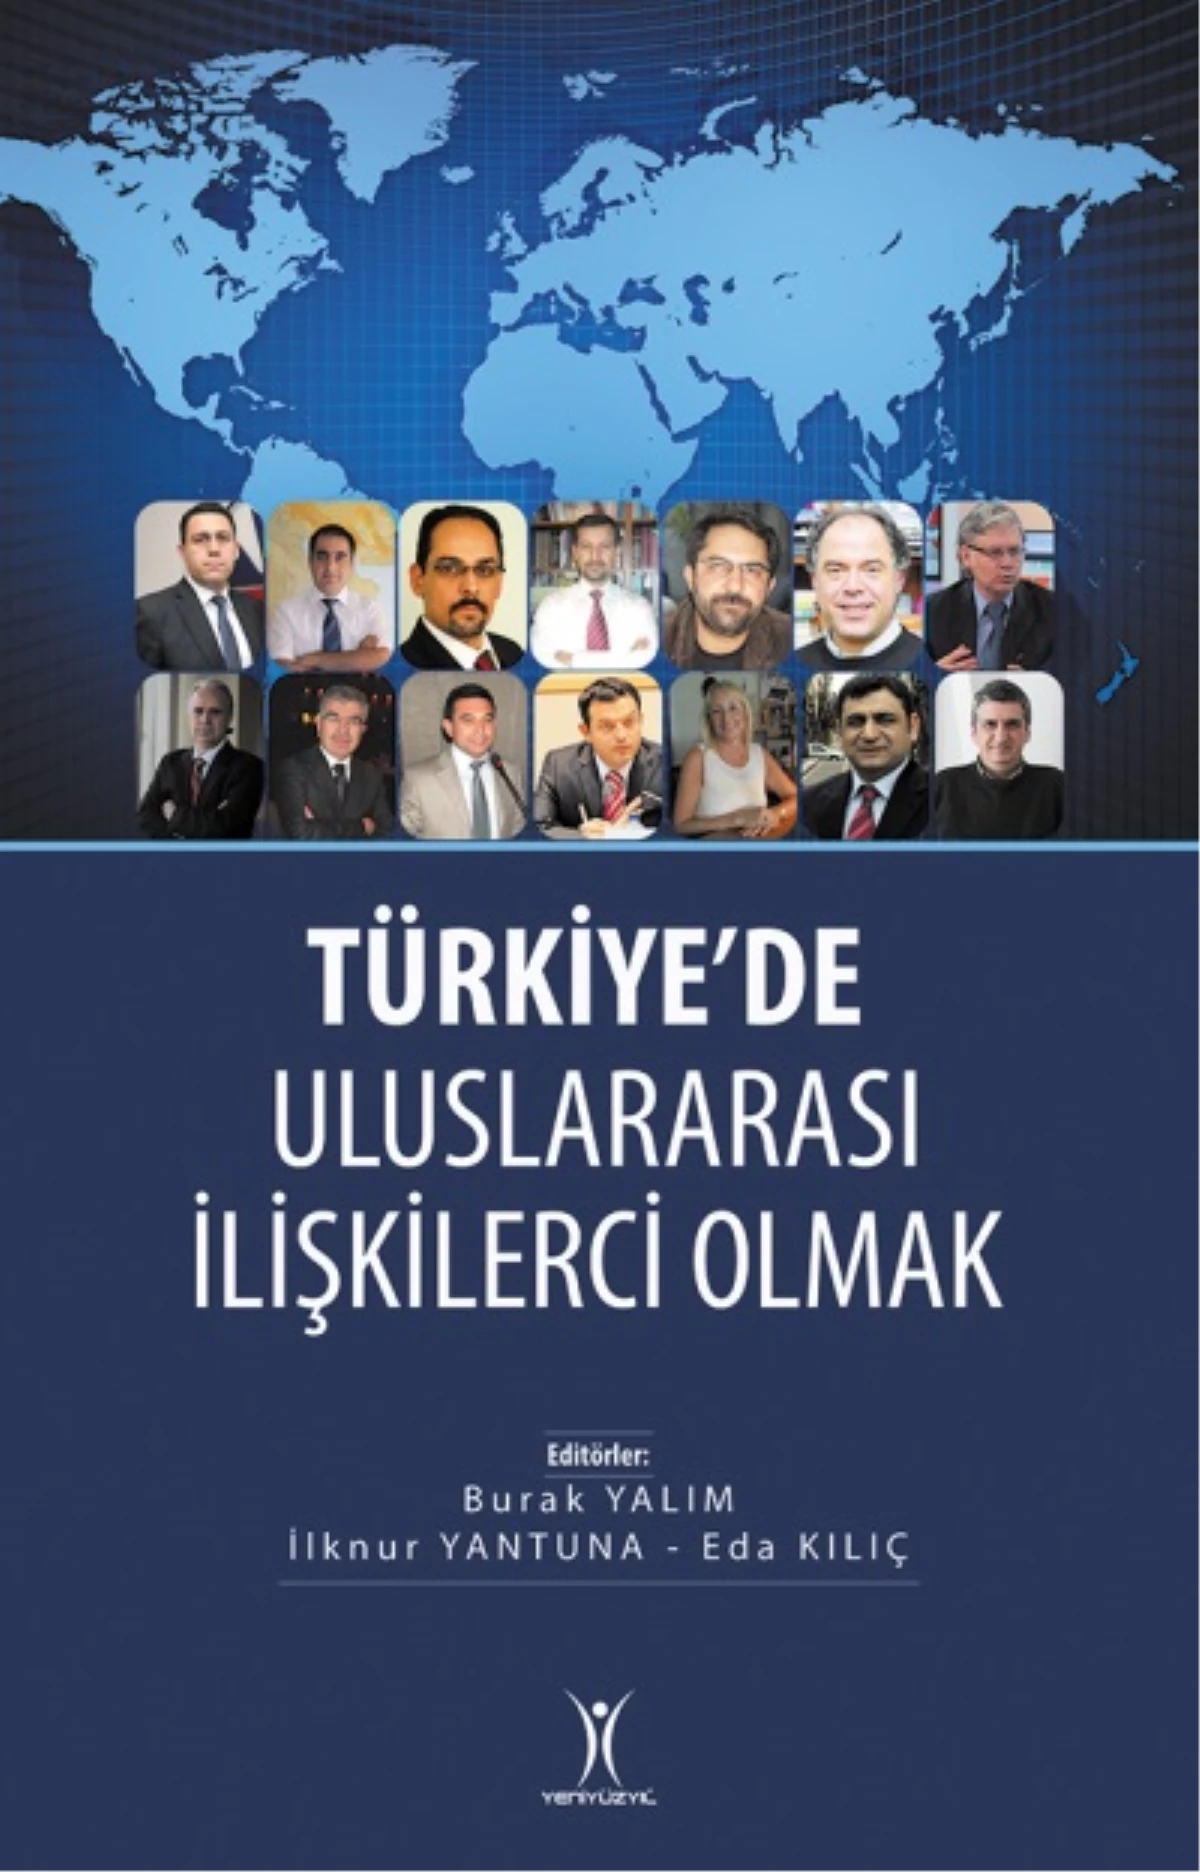 \'Türkiye\'de Uluslararası İlişkilerci Olmak\' Kitabı Çıktı